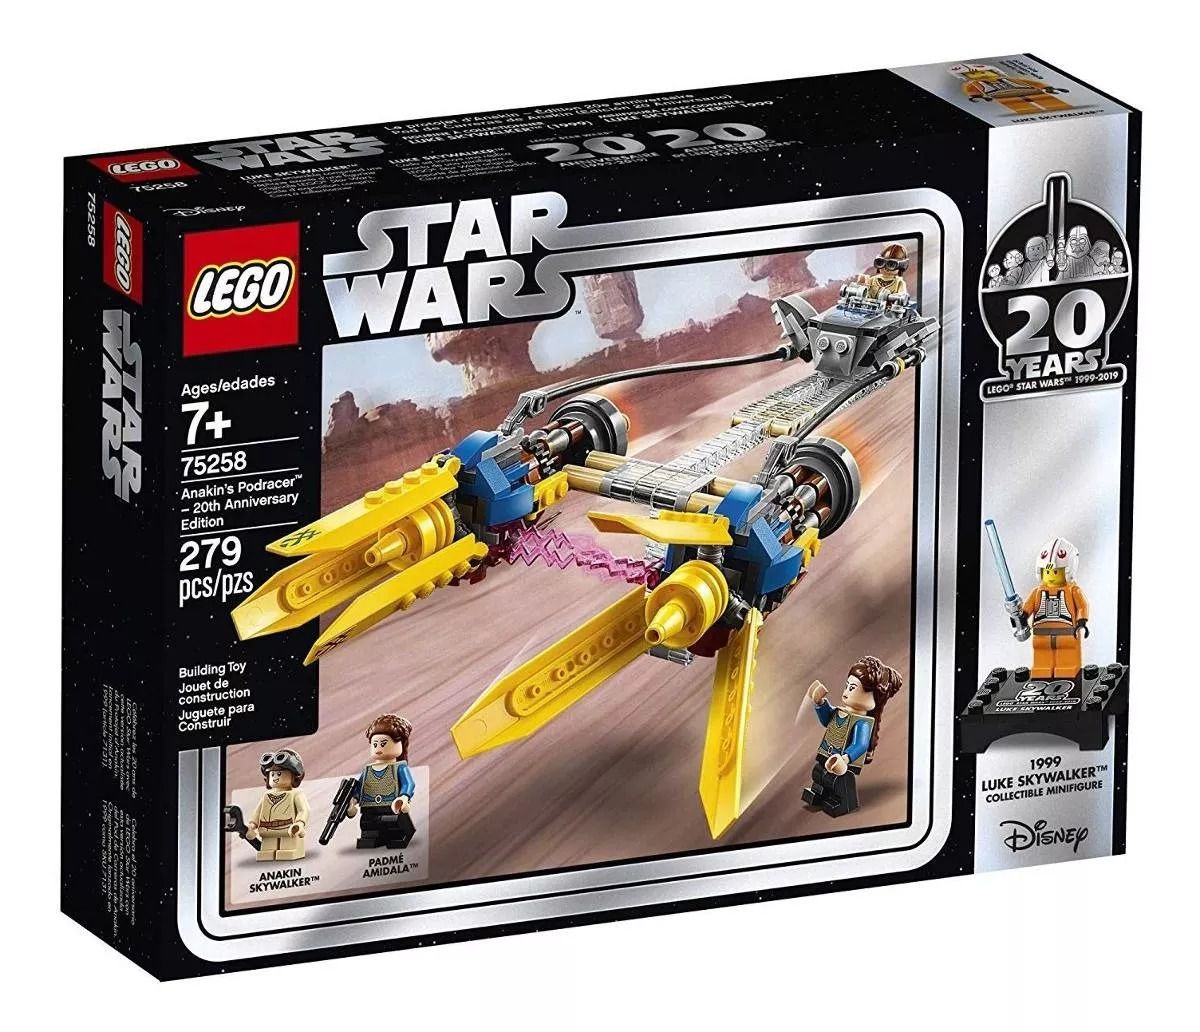 Lego 75258 Star Wars Podracer de Anakin - Edição de 20-Aniversário – 279 peças